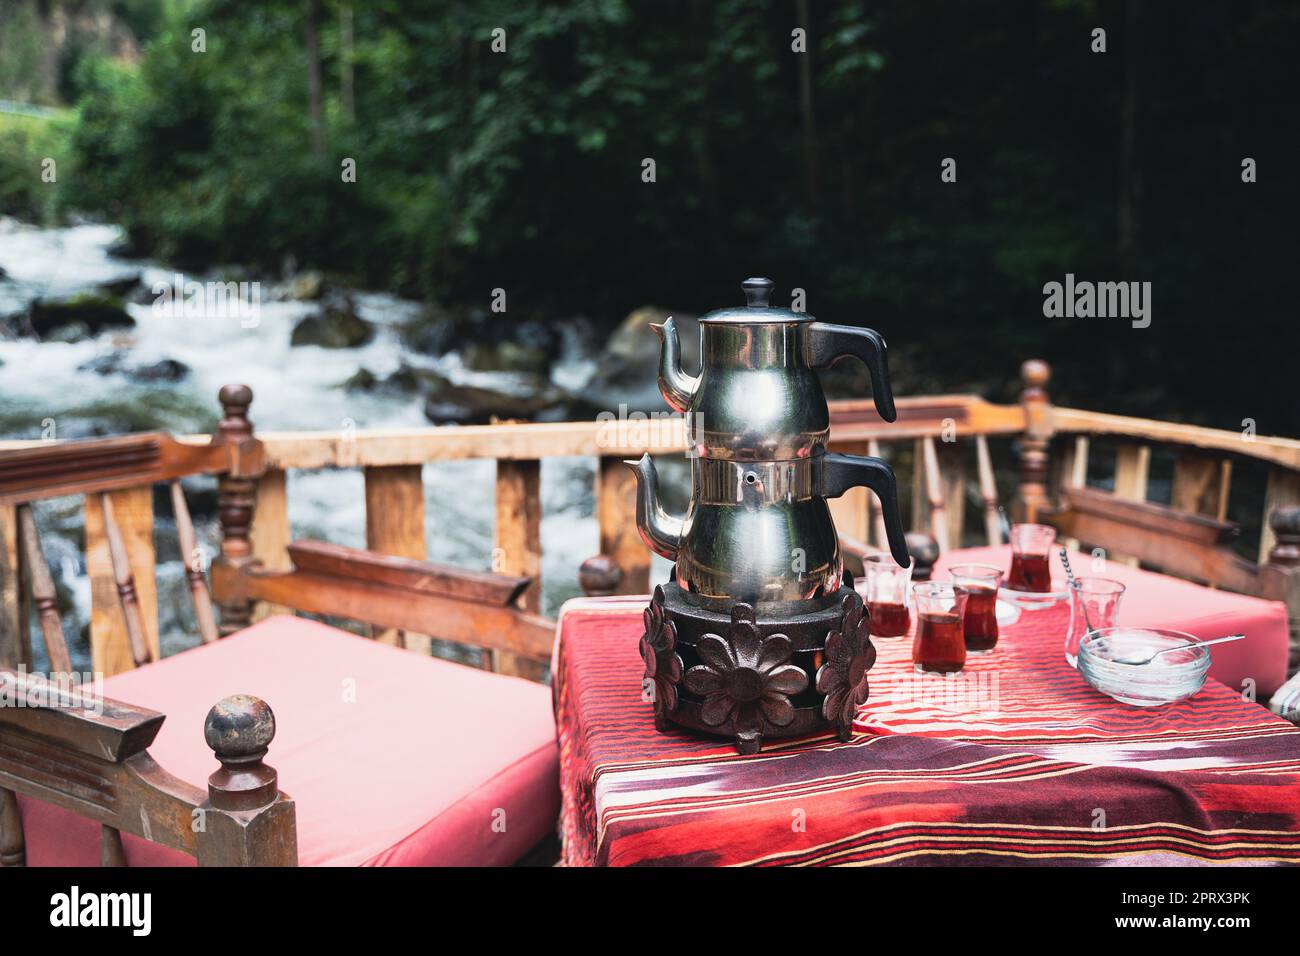 El té turco tradicional cromado tetera y vasos se sirven en una mesa de restaurante con sillas cerca de un río en un entorno al aire libre Foto de stock